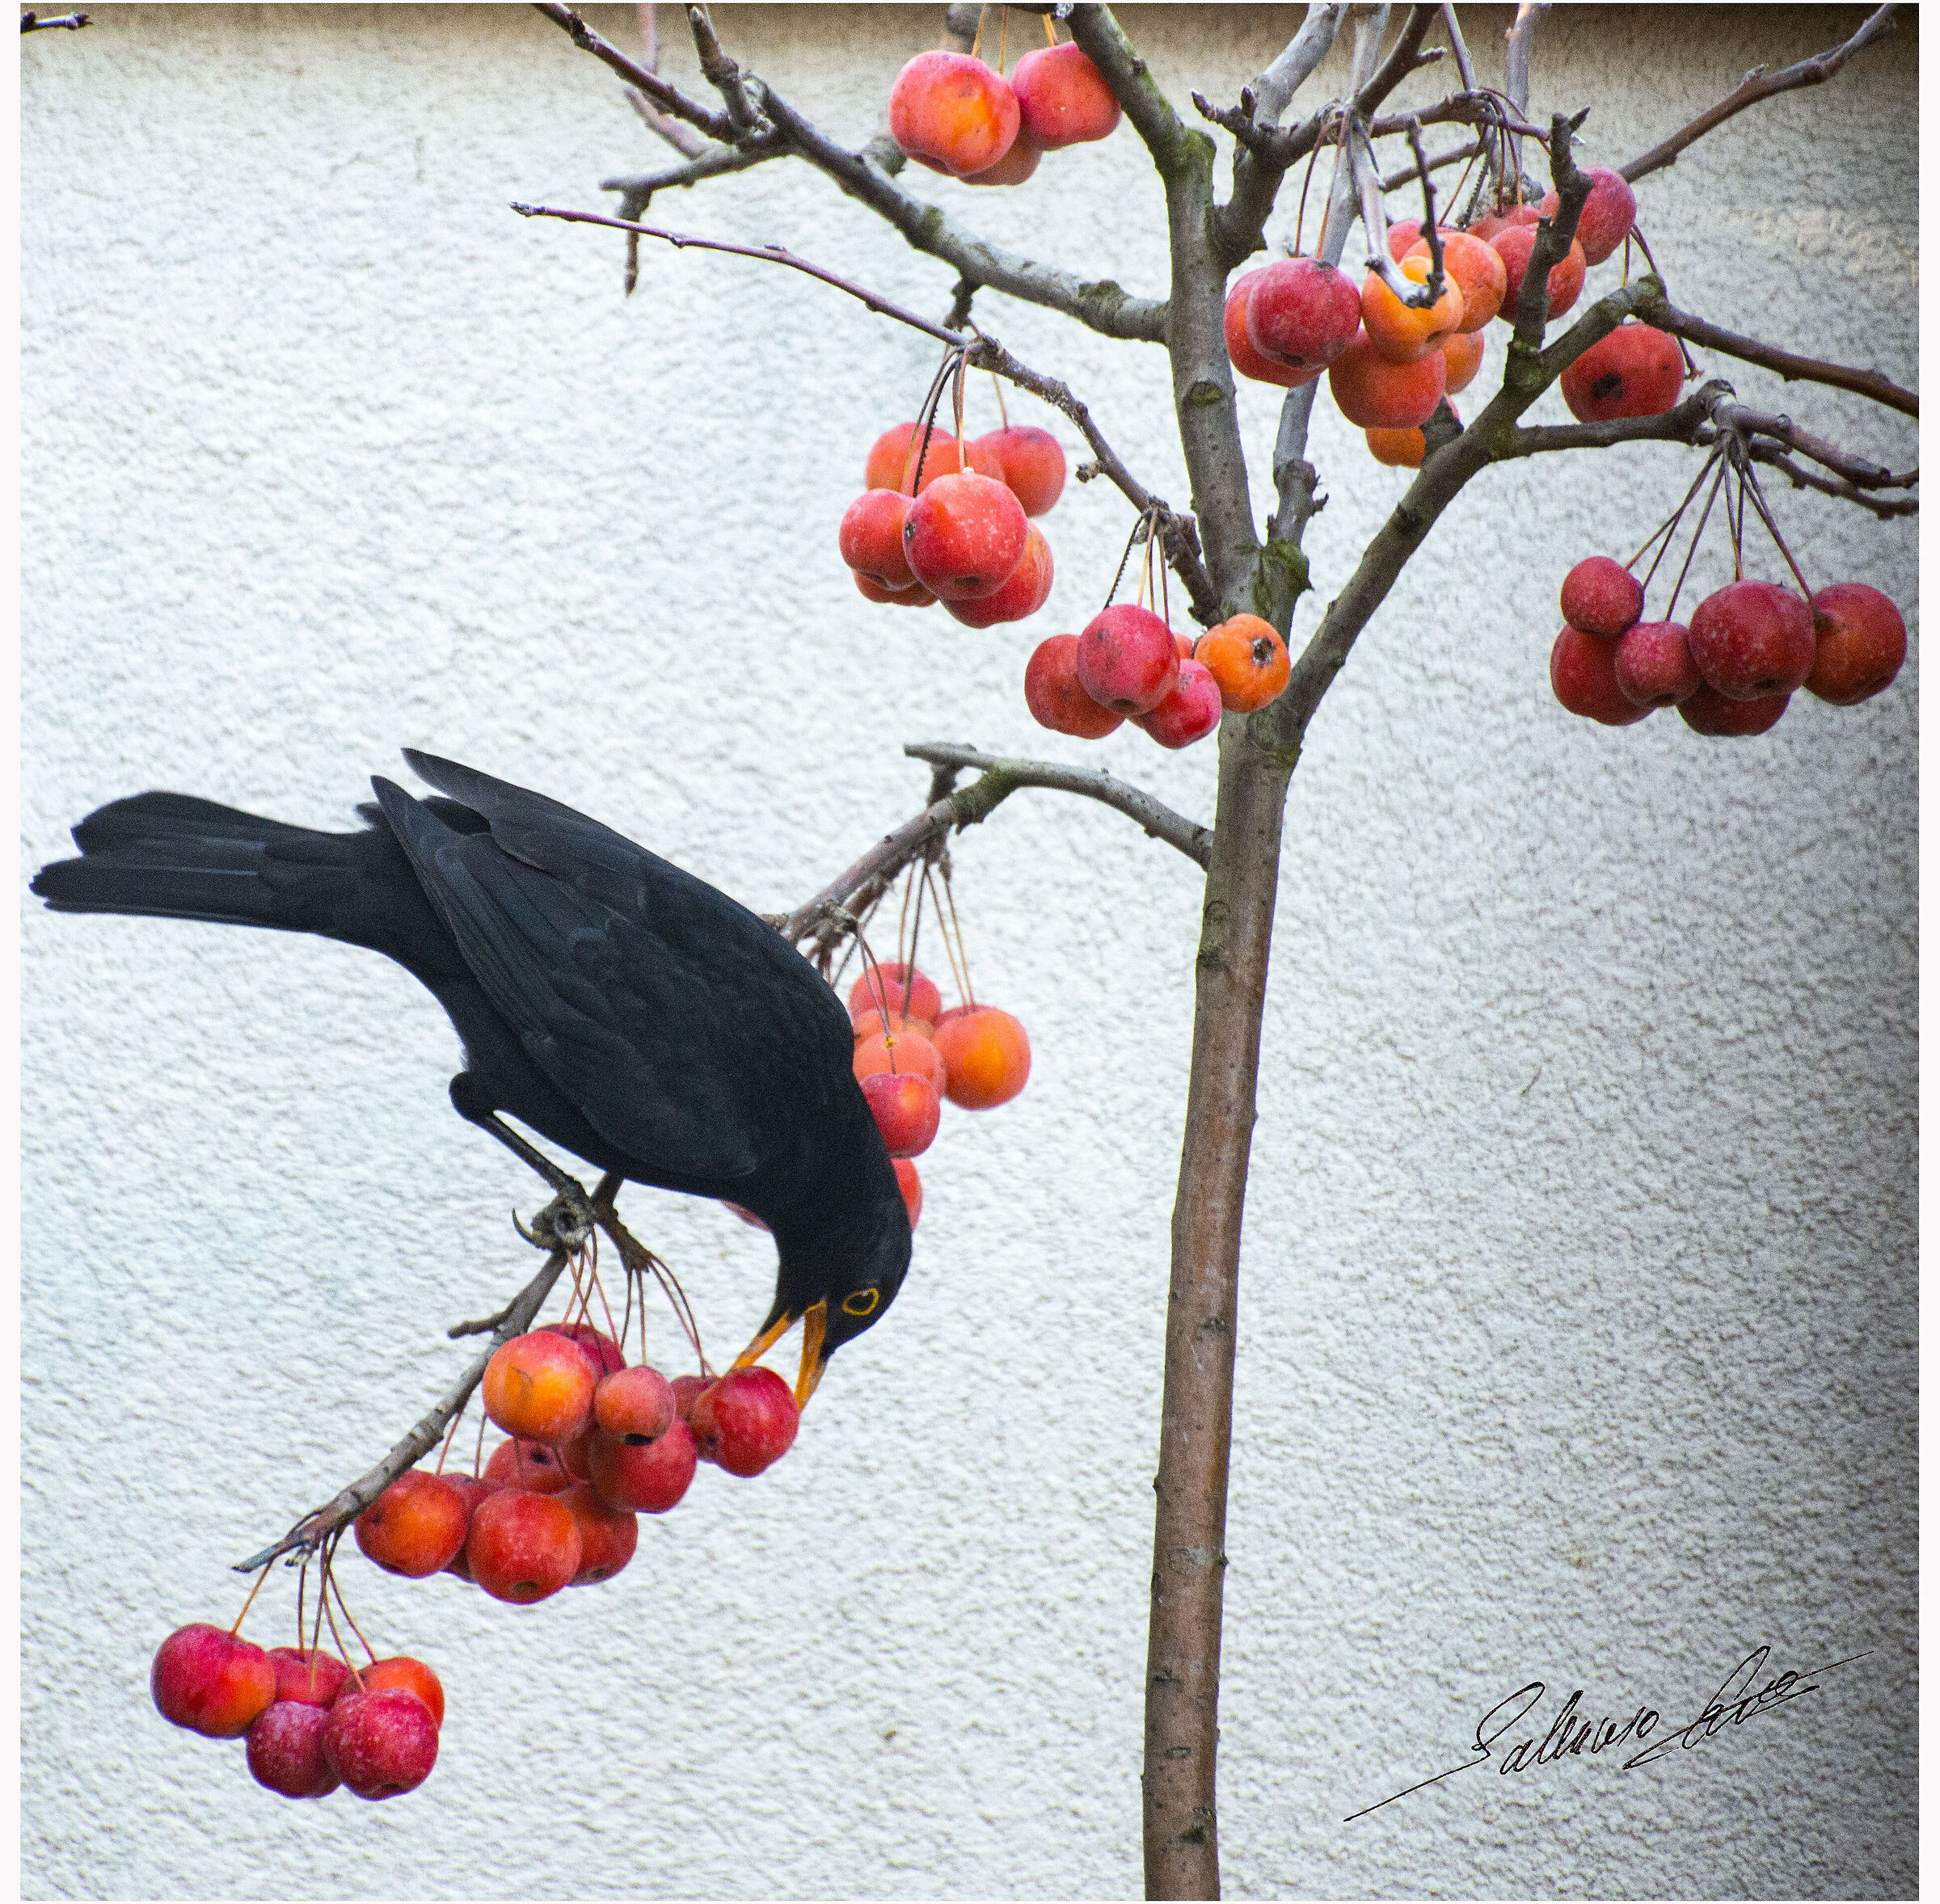 Blackbird at banquet...